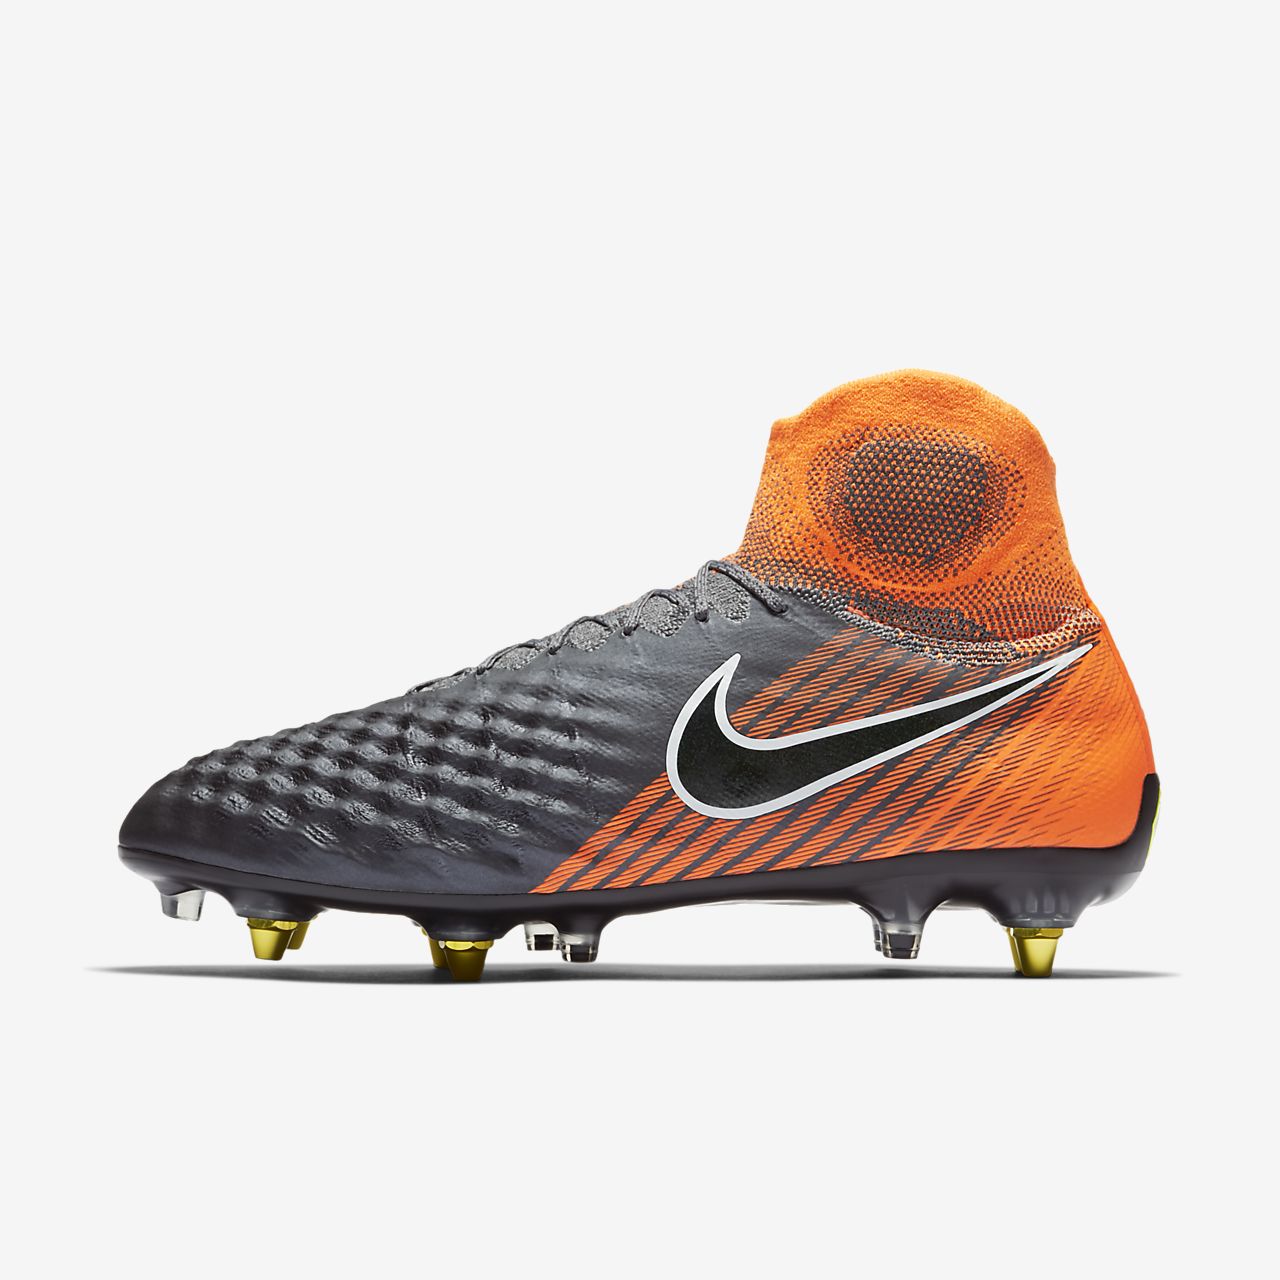 Nike MAGISTAX Finale II TF Size 10 Turf Soccer Shoes eBay